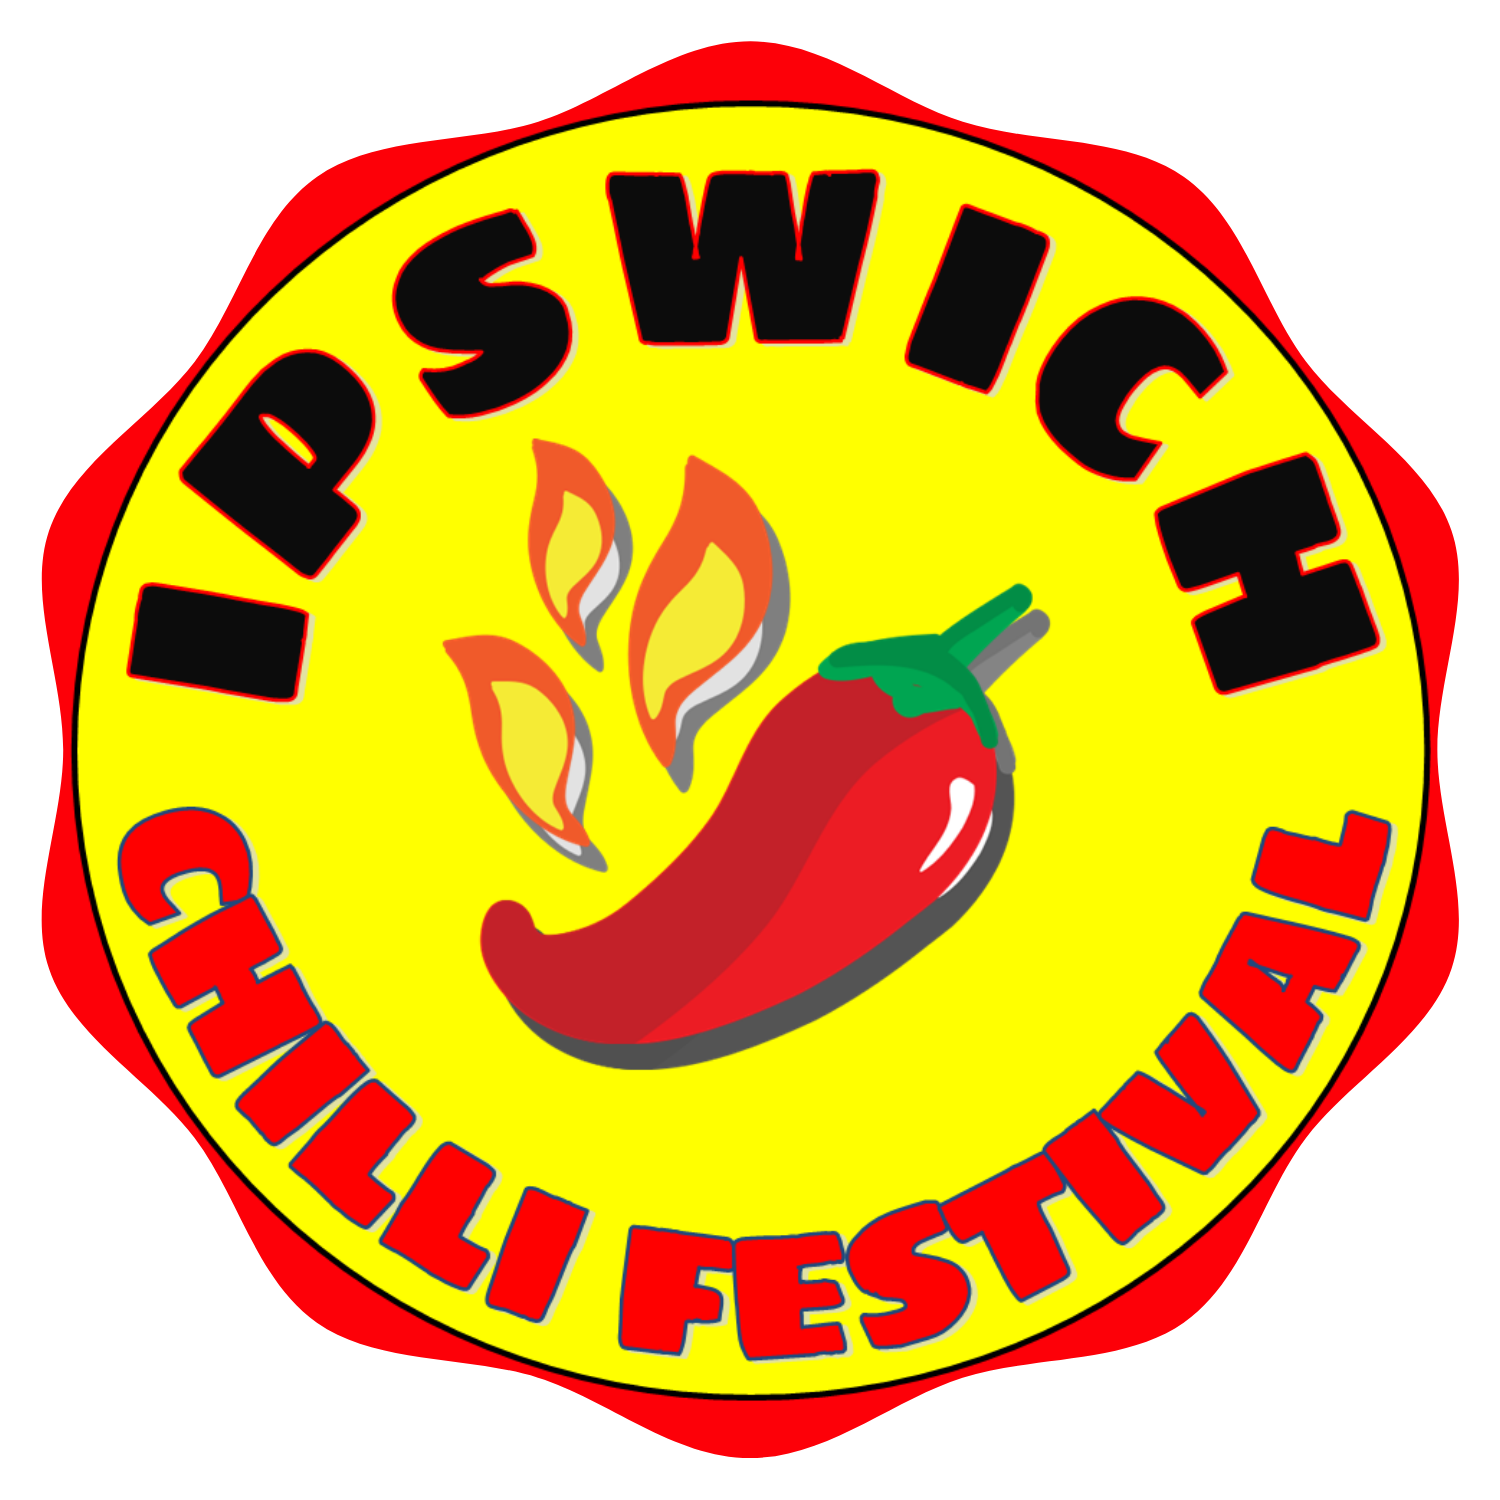 Ipswich Chilli Festival